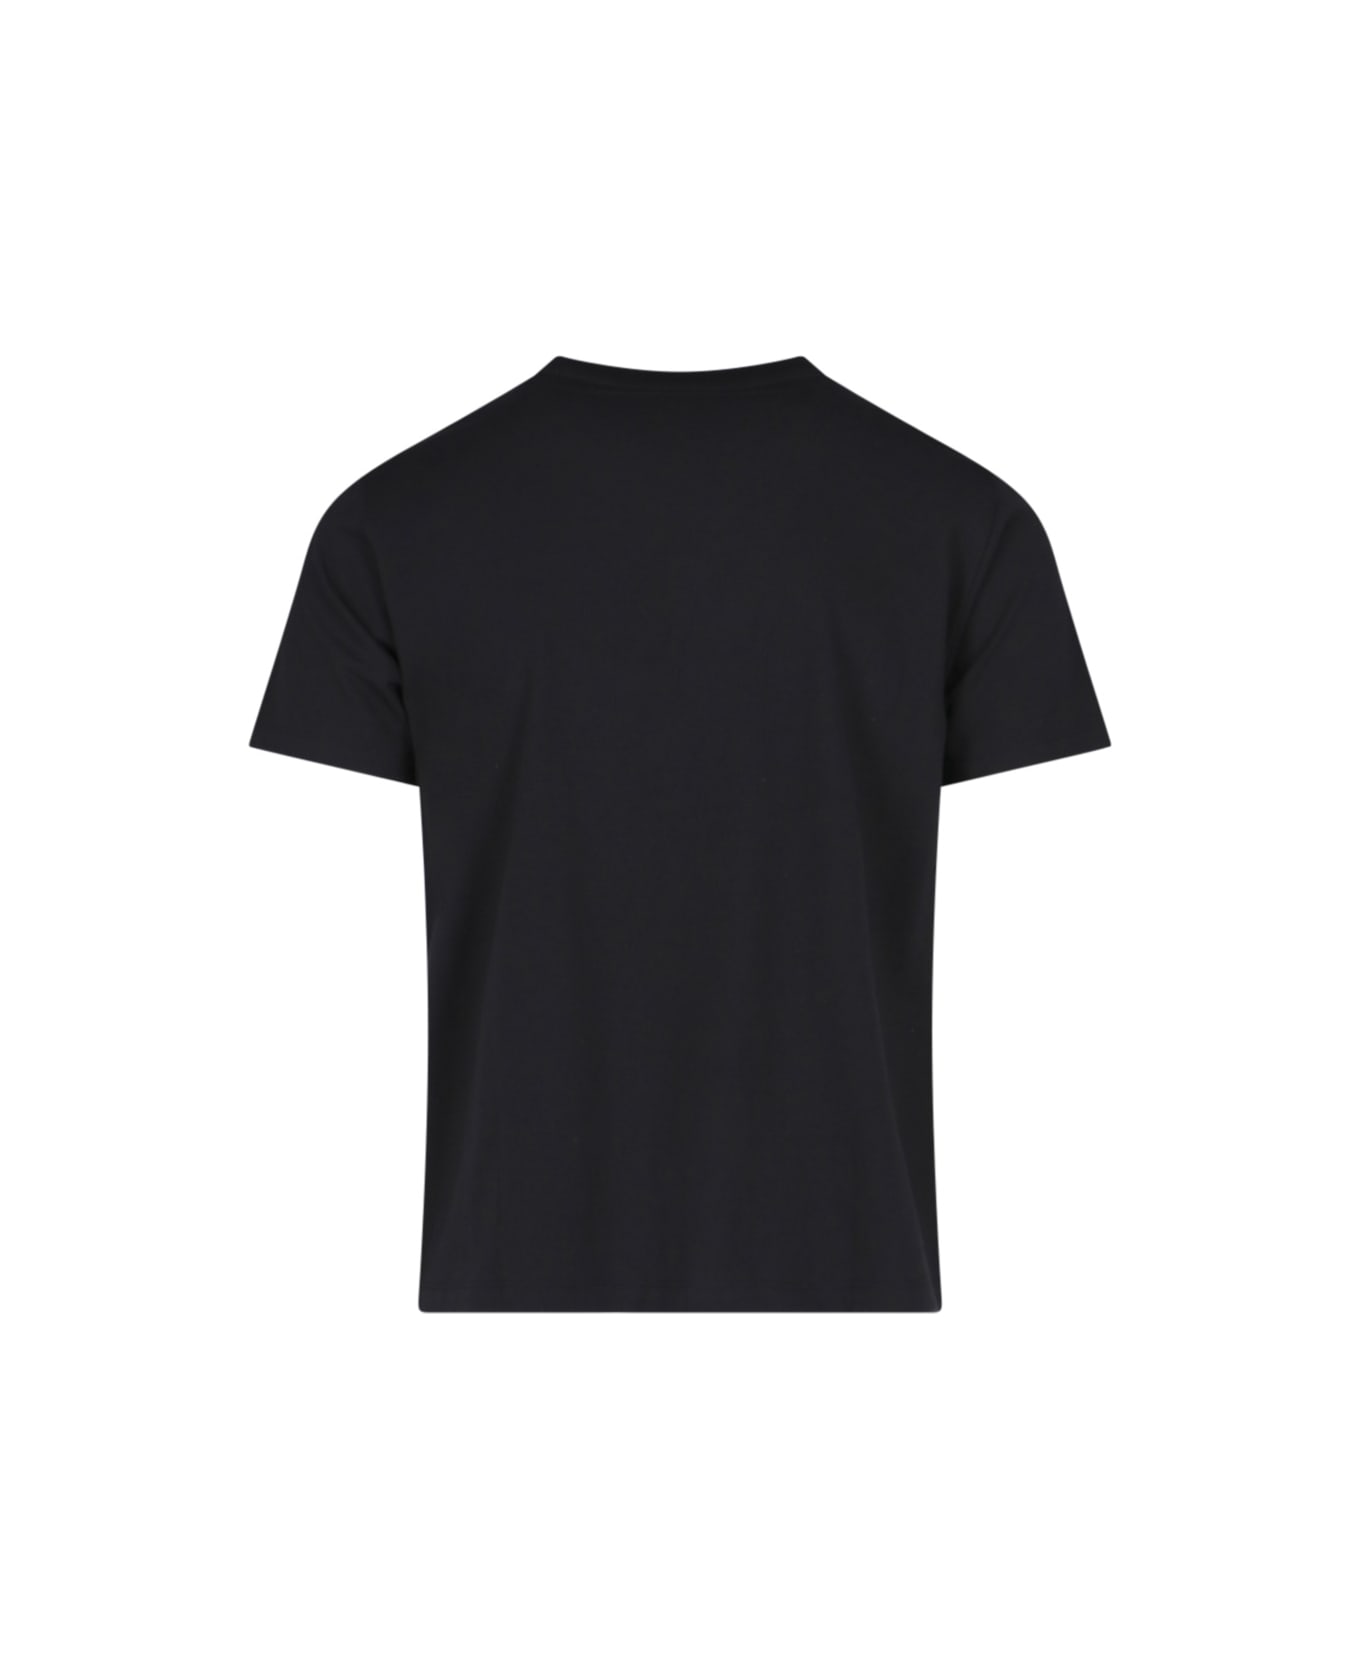 MCM Logo T-shirt - Black   Tシャツ